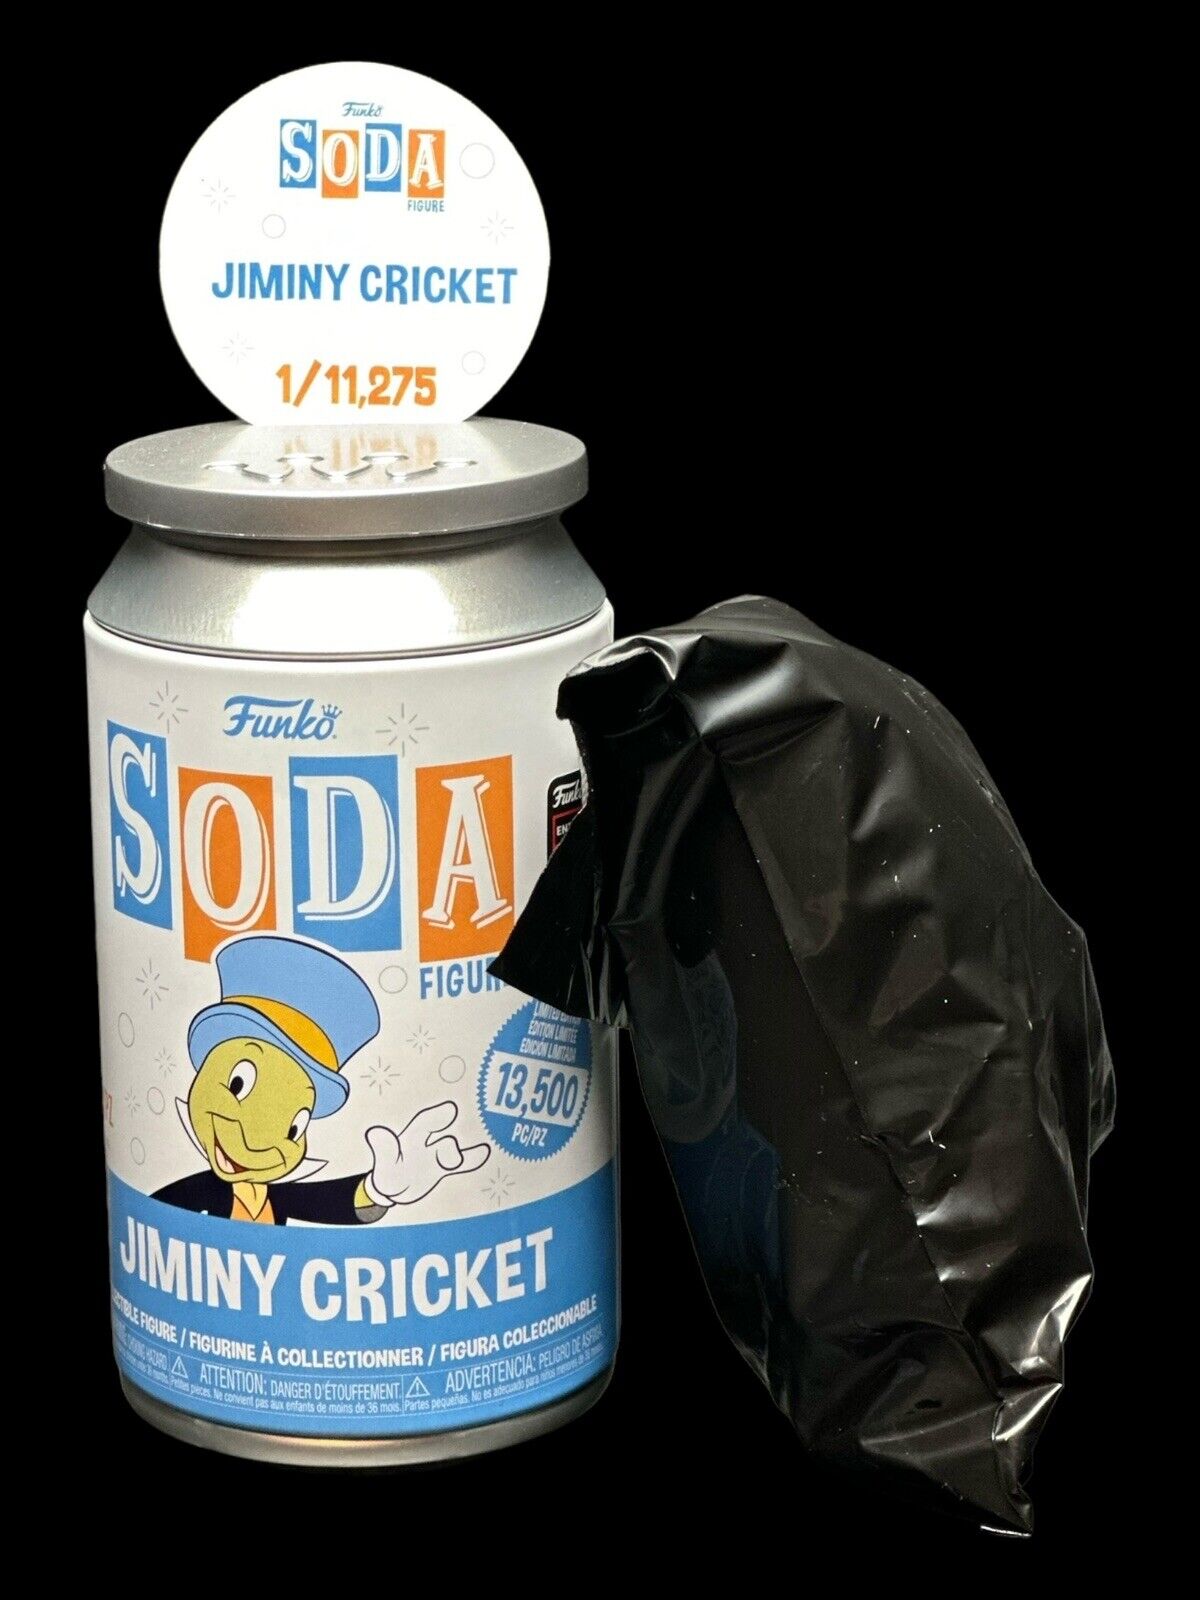 Funko Soda Jiminy Cricket - 2024 C2E2 Shared Sticker - Sealed In Bag 1/11,275